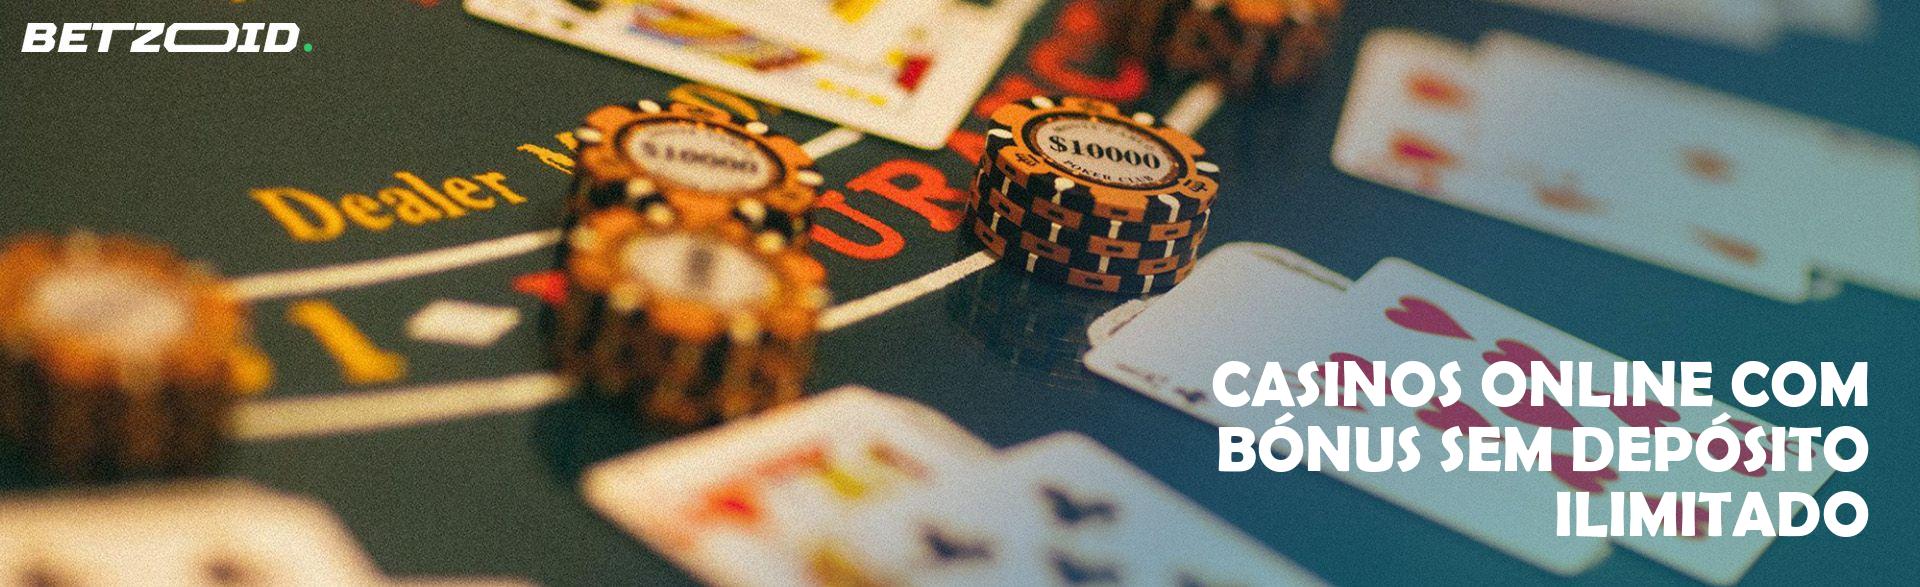 Casinos Online com Bónus sem Depósito Ilimitado.